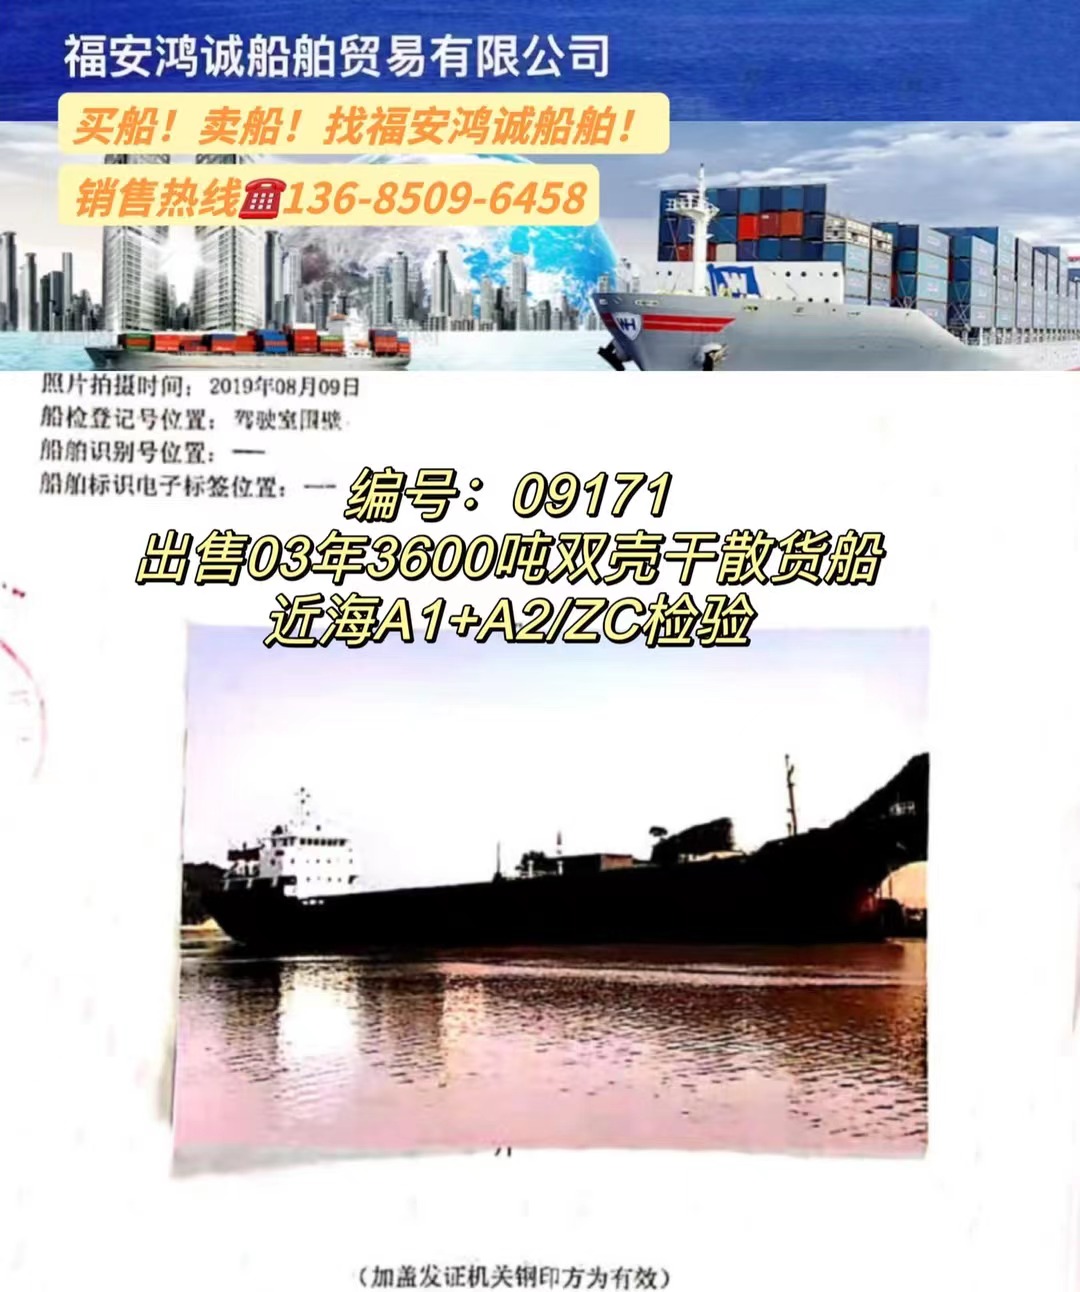 出售3600吨双壳干散货船： 2003年浙江永嘉建造/